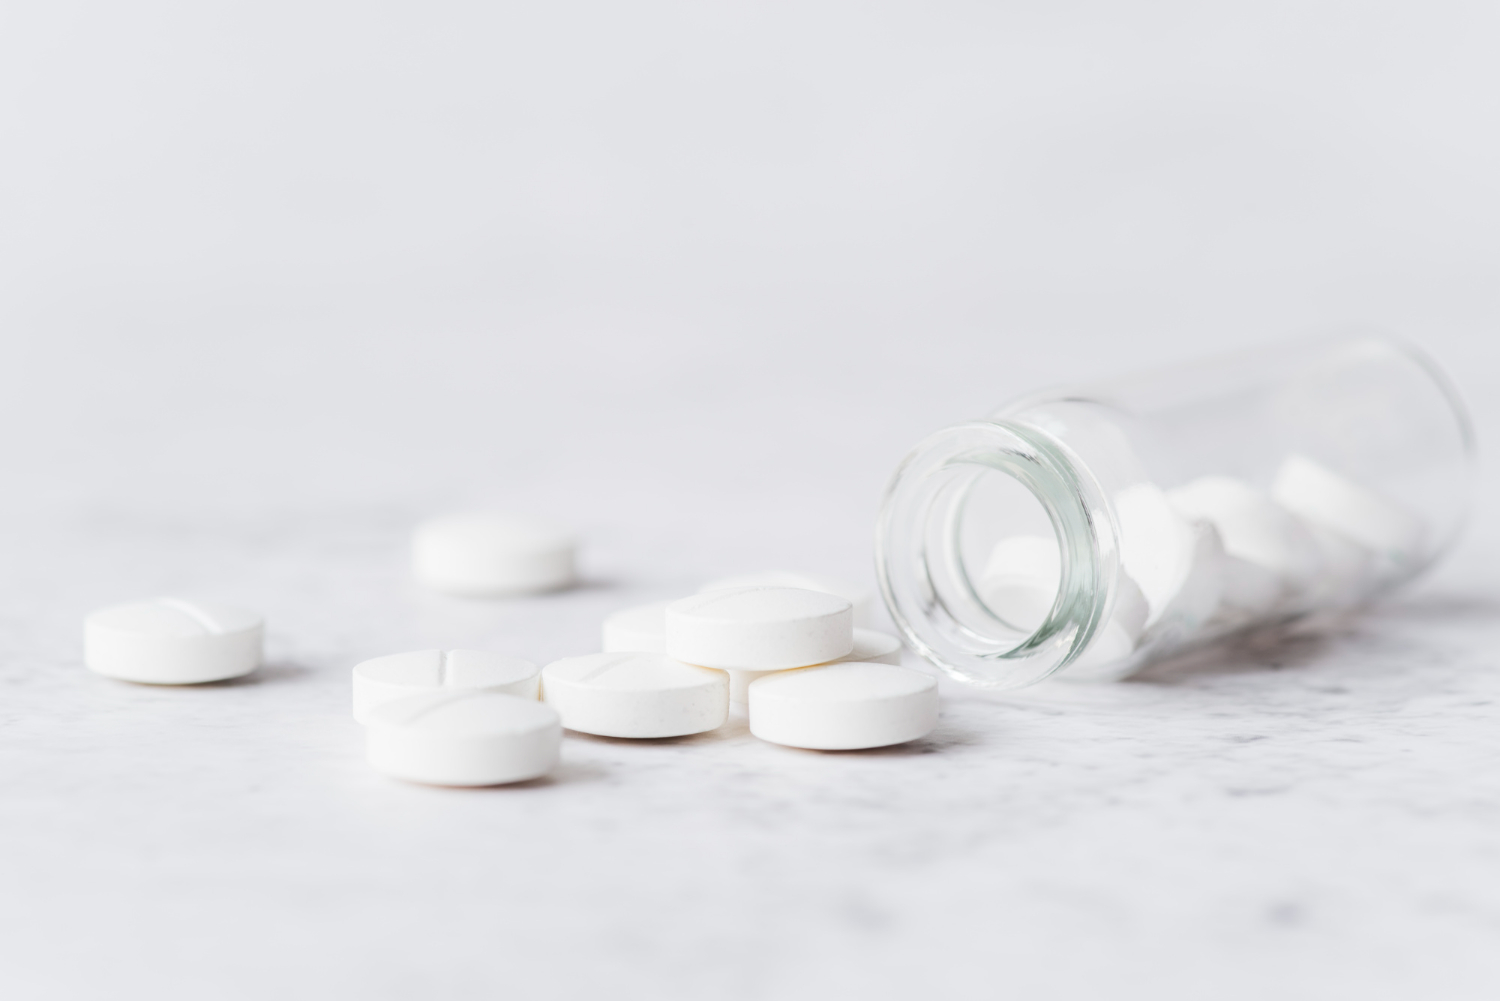 Você está visualizando atualmente Tomar aspirina diariamente aumenta risco de hemorragia estomacal em idosos